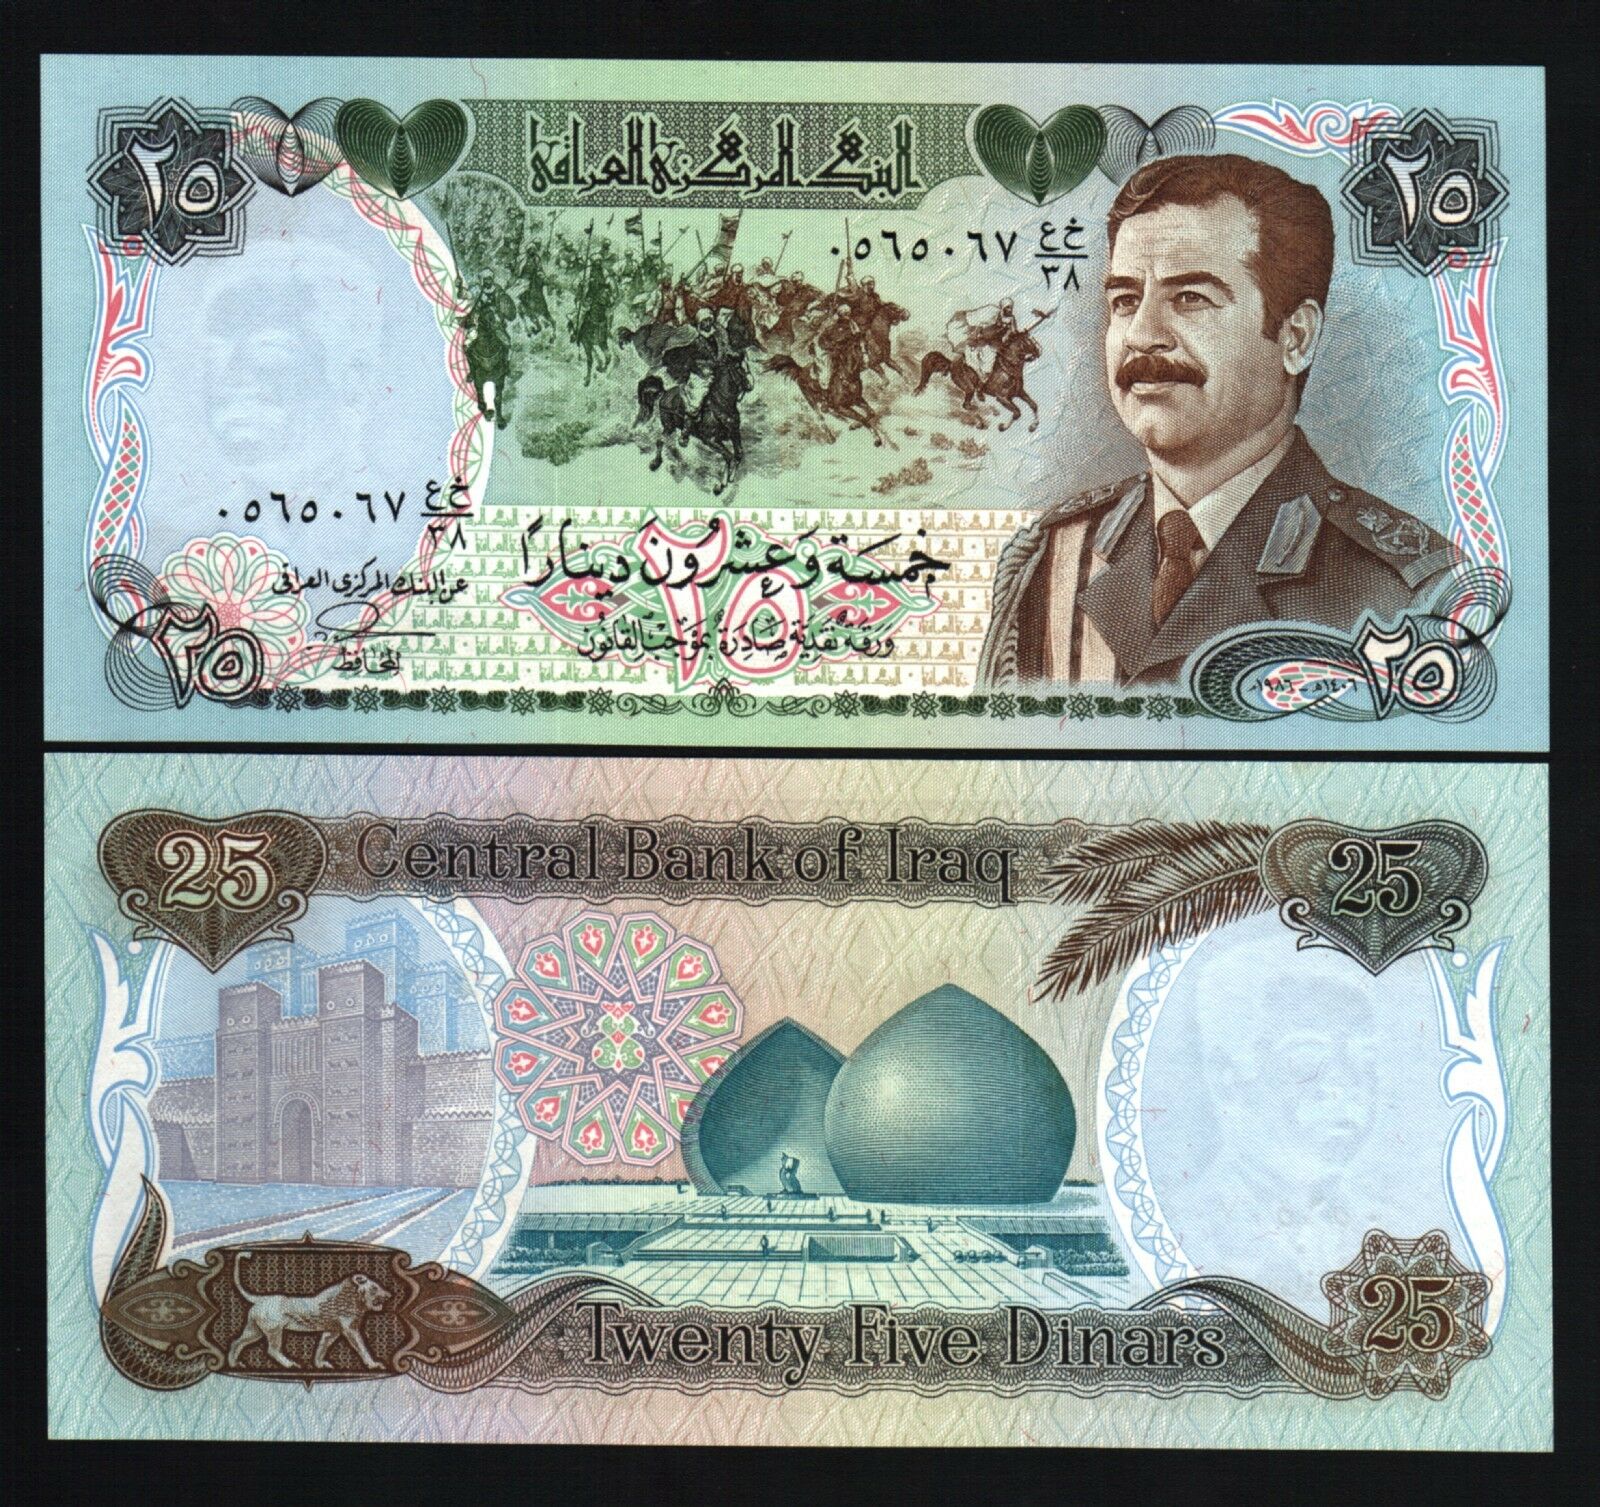 IRAQ 25 IRAQI DINARS P73 1986 10 Pcs Lot SADDAM MILITARY UNIFORM UNC SWISS MONEY